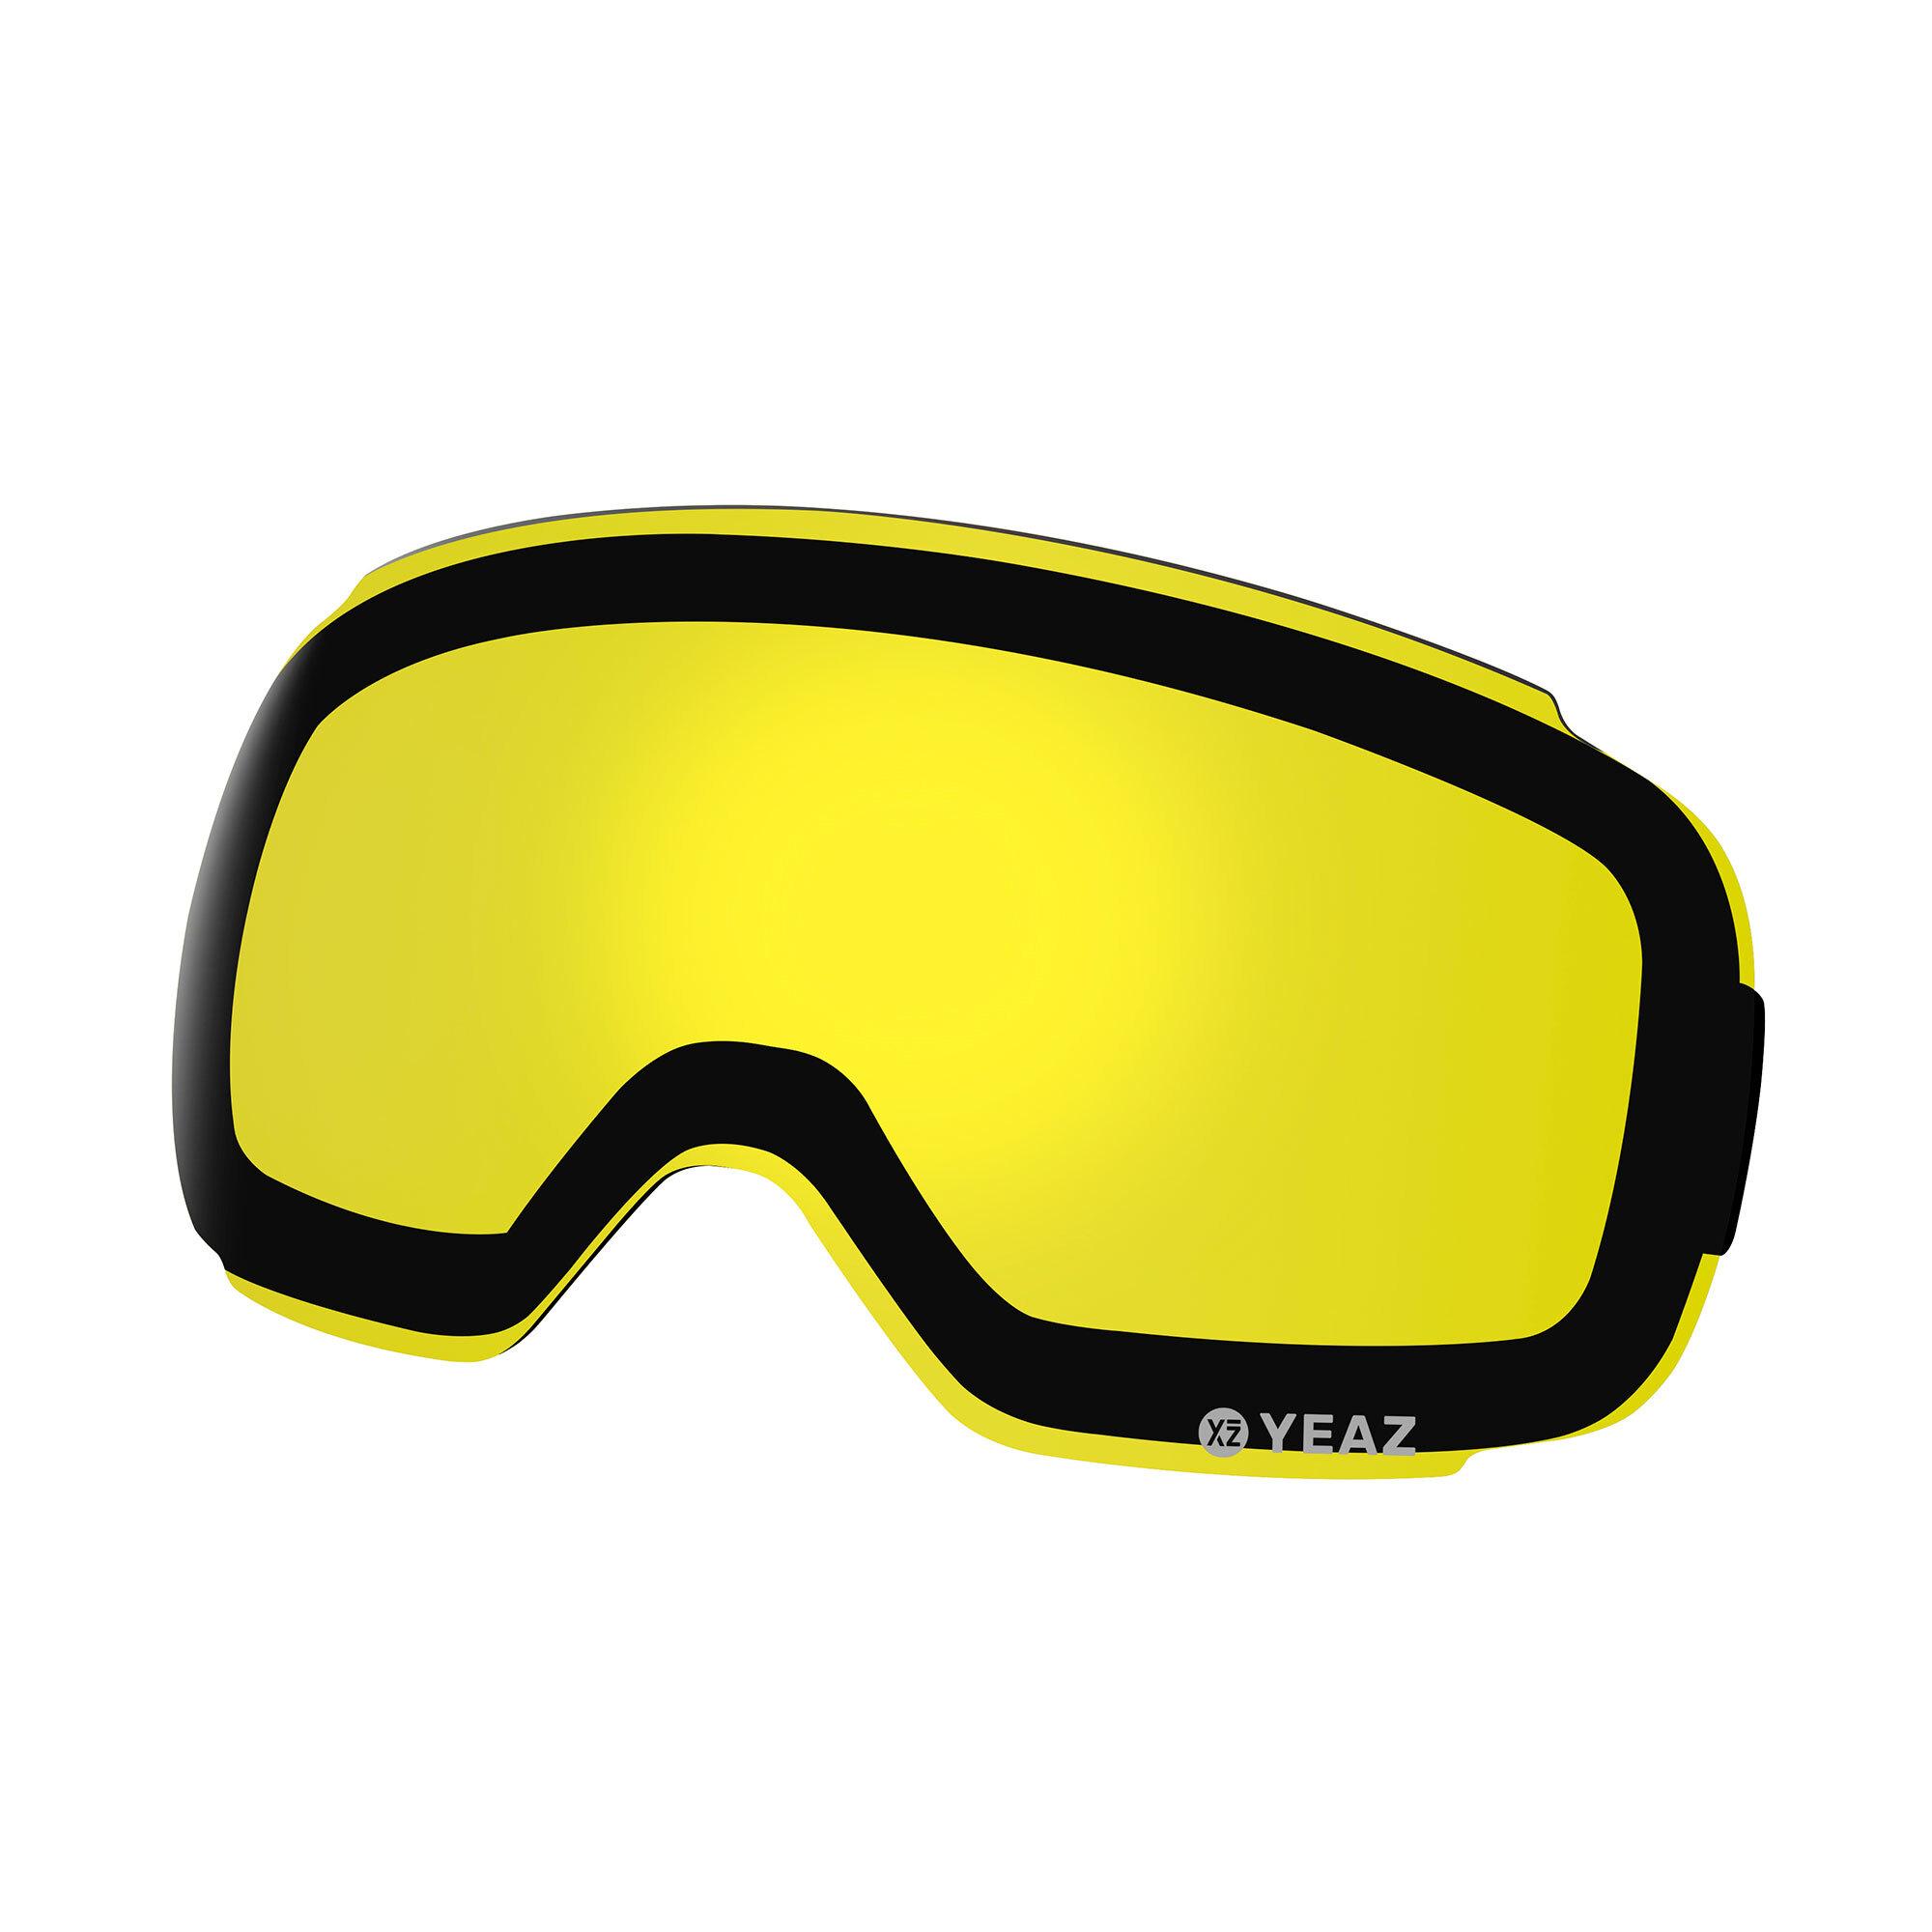 Ausrüstung Shop SportScheck » Online kaufen von Ski im gelb in